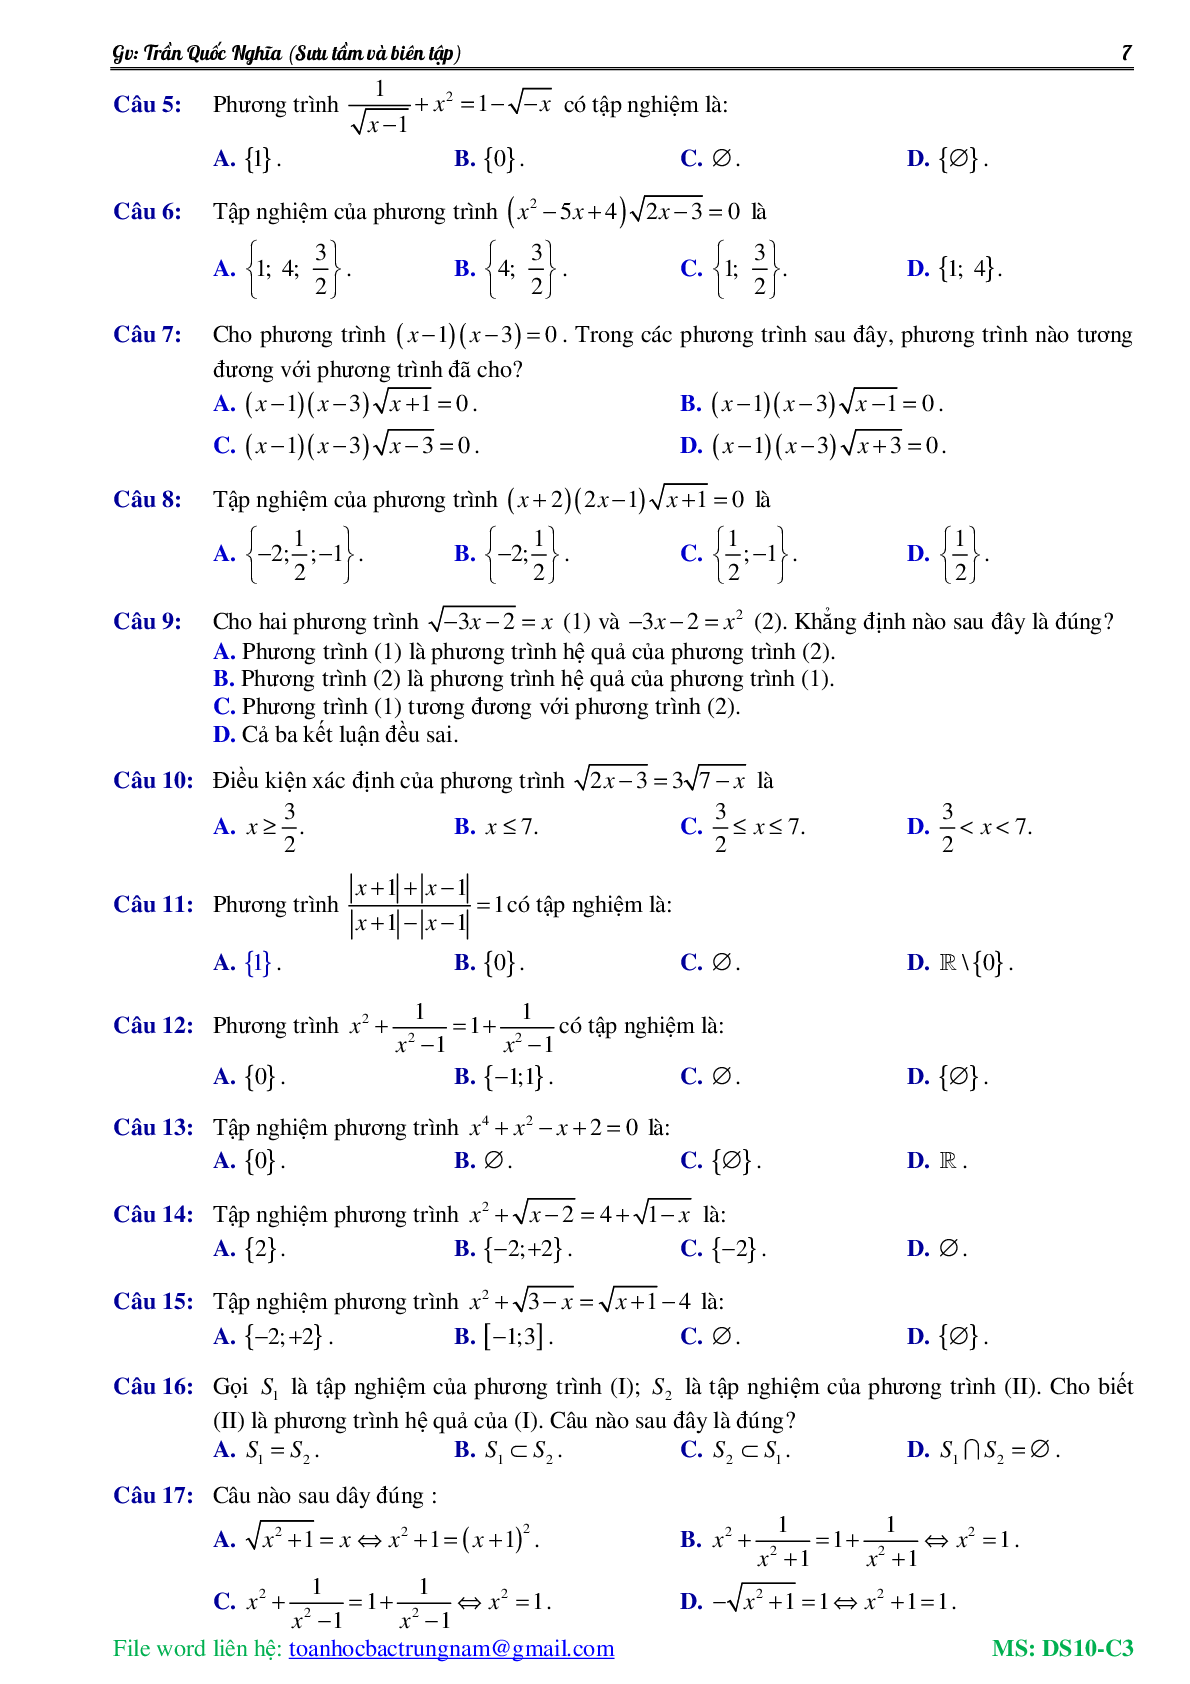 Lý thuyết, bài tập về Phương trình và hệ phương trình có đáp án (trang 8)